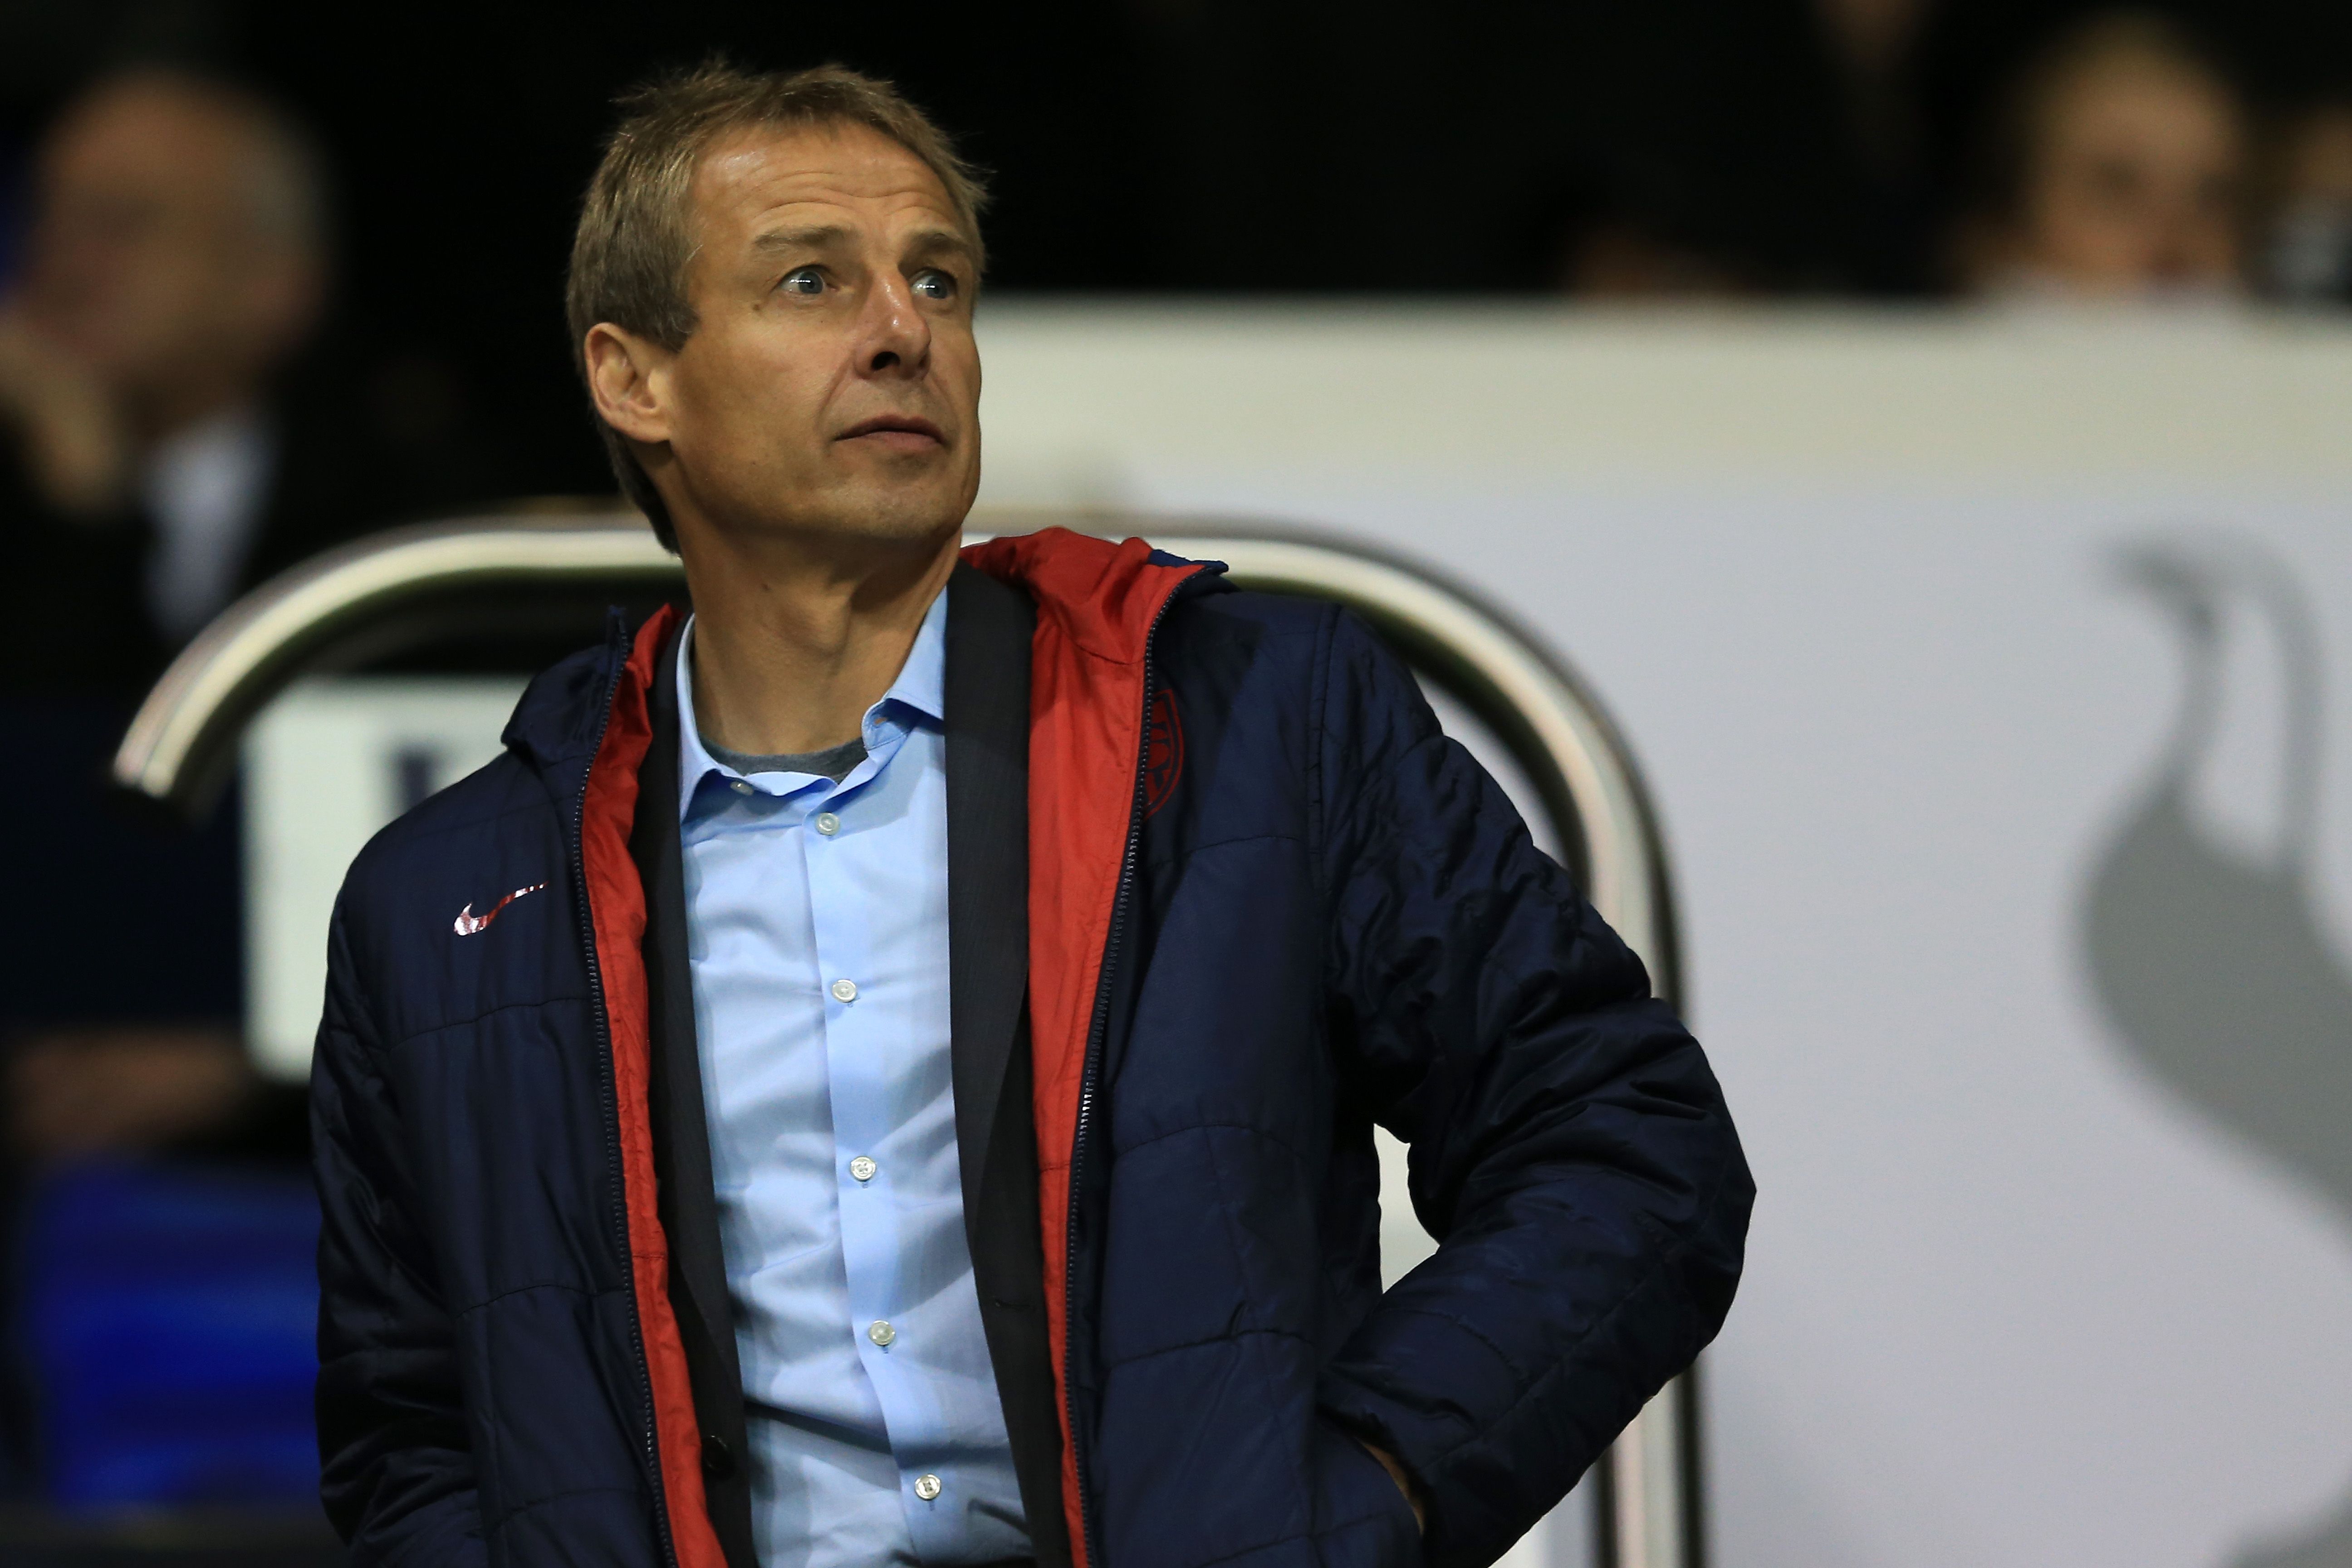 Klinsmann's return didn't come at a high level